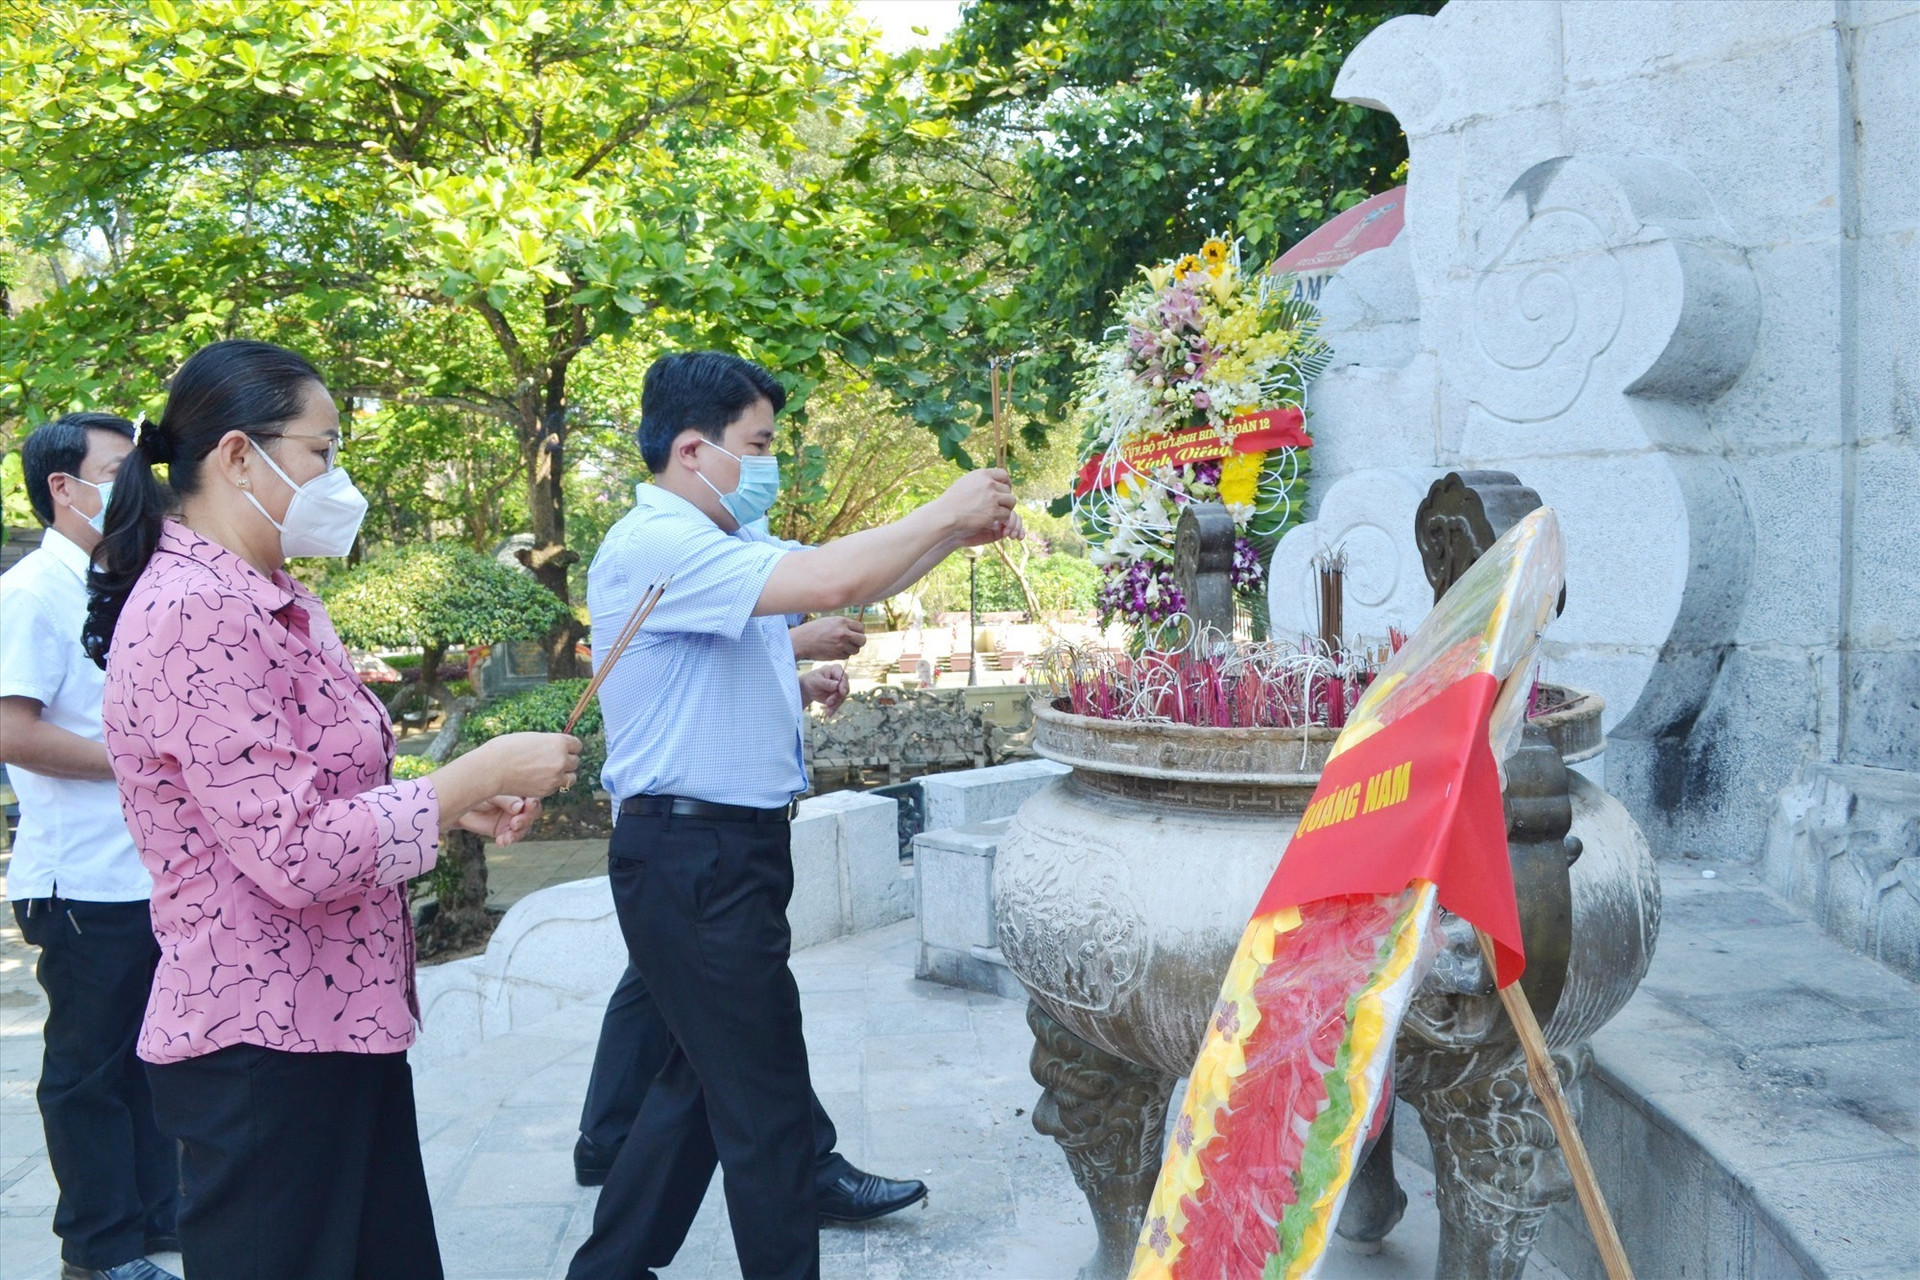 Phó Chủ tịch UBND tỉnh Trần Văn Tân và đoàn công tác viếng hương các anh hùng liệt sĩ ở Nghĩa trang liệt sĩ Trường Sơn. Ảnh: Q.VIỆT